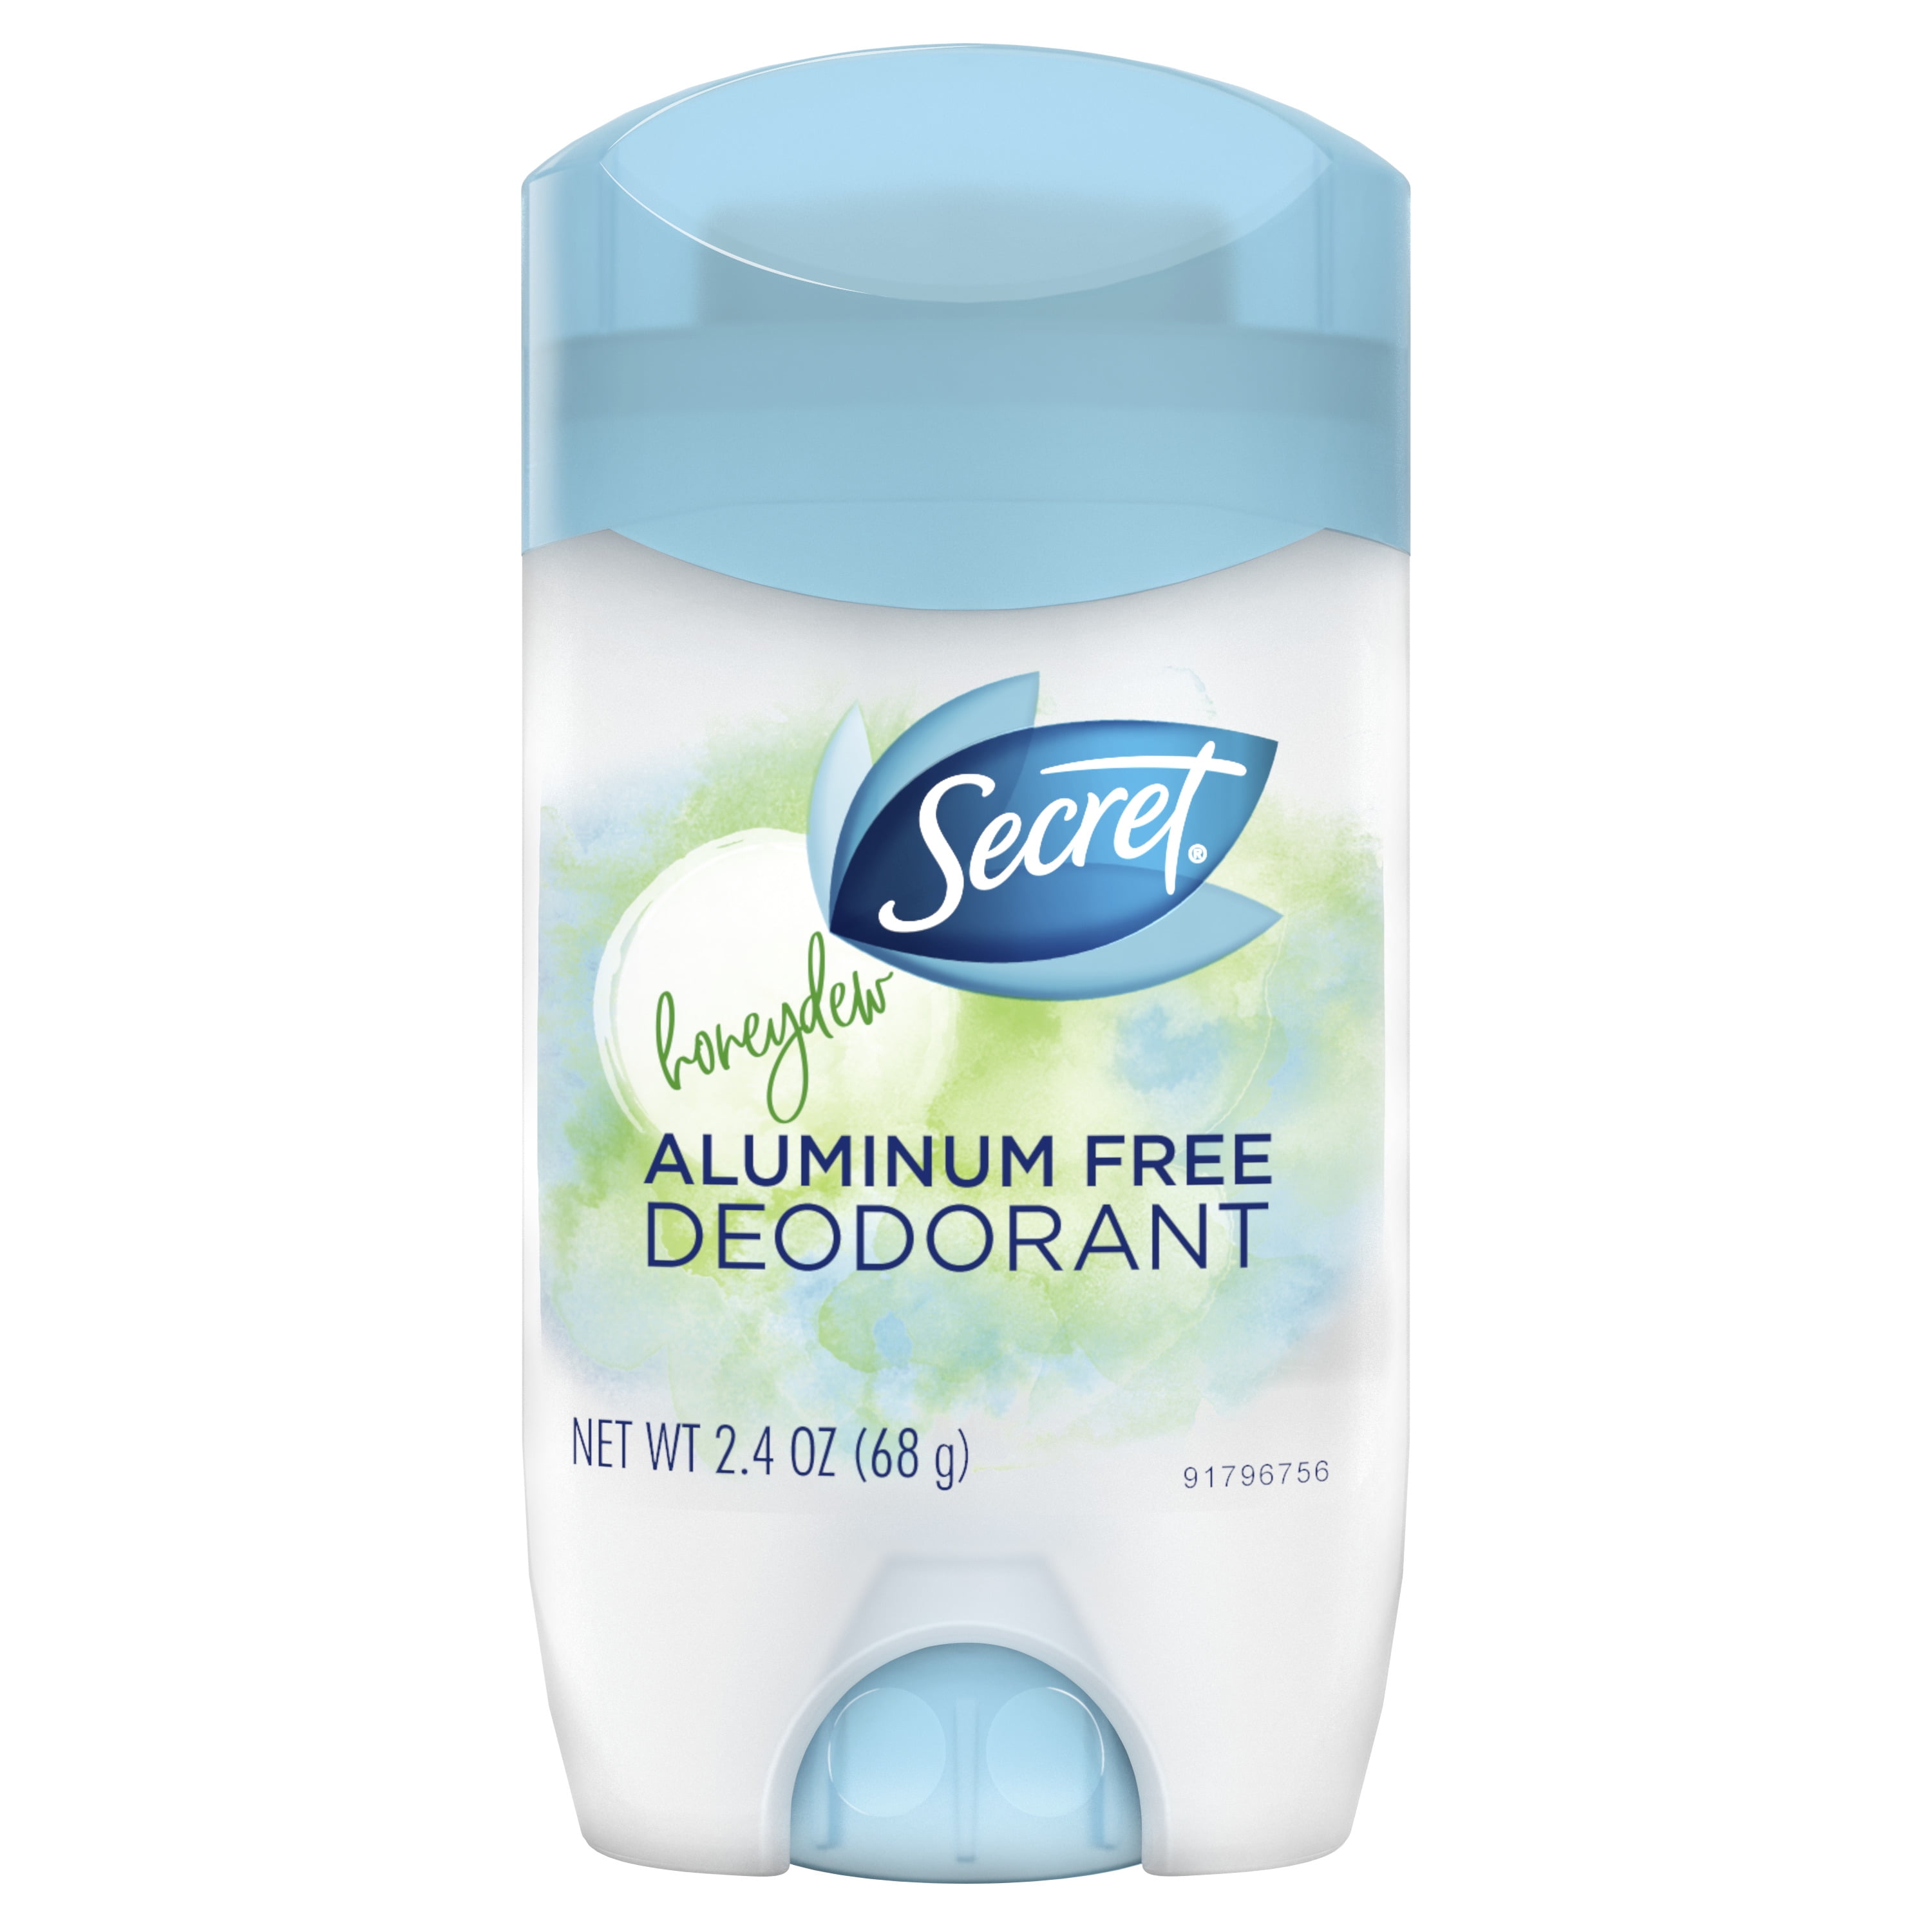 Secret Deodorant, Cotton, Aluminum Free - 2.4 oz